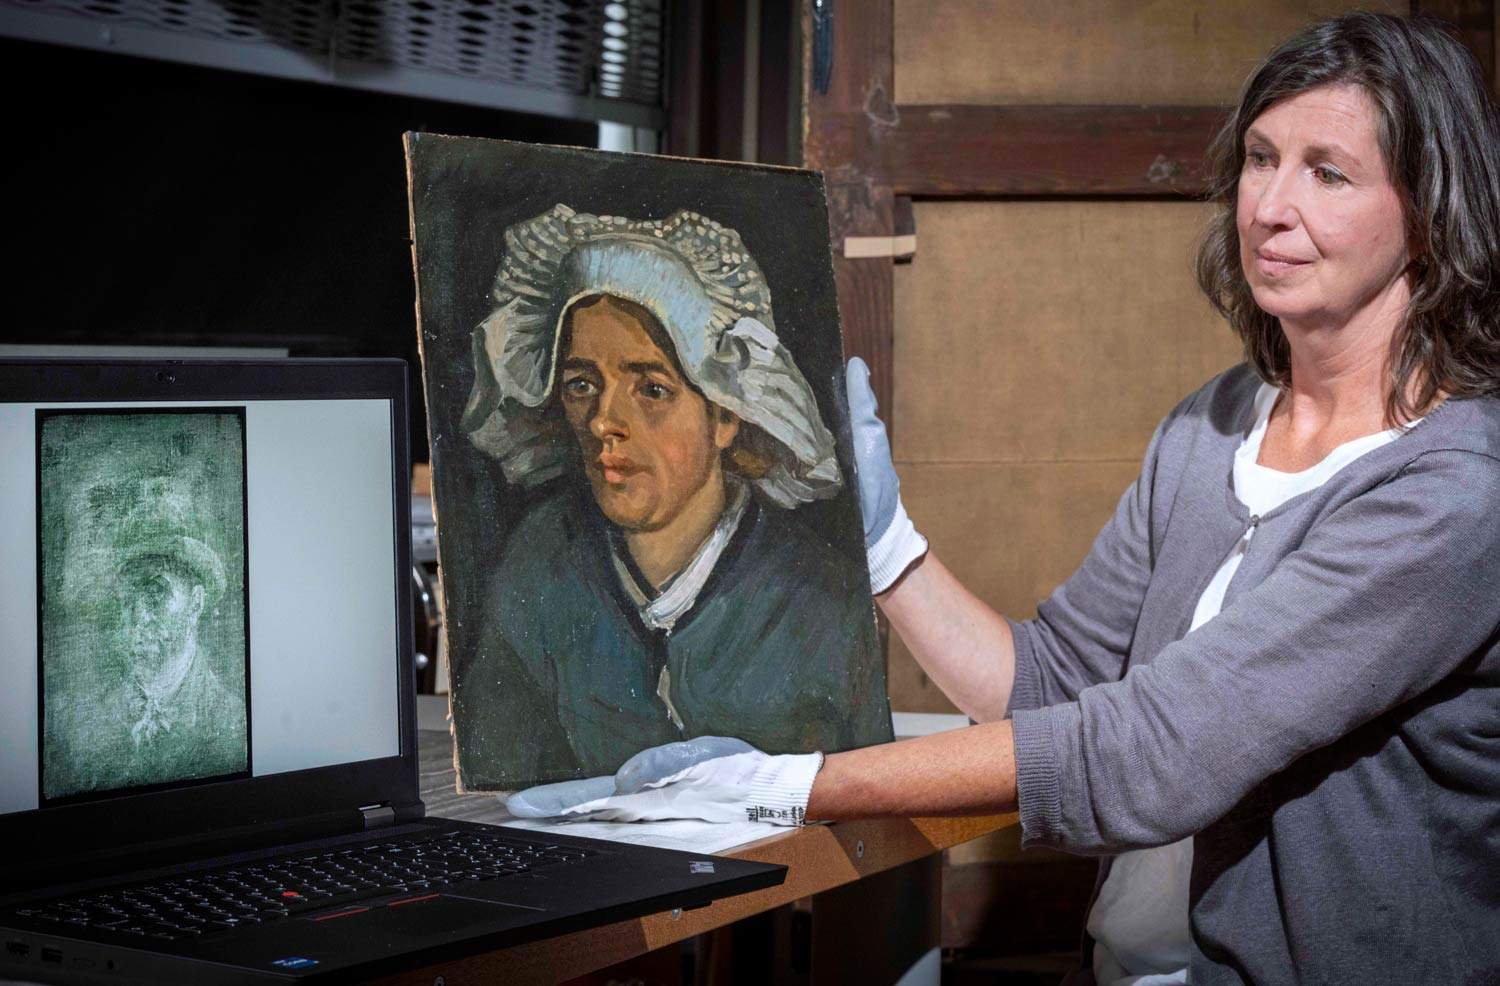 Découverte remarquable en Écosse: un autoportrait inconnu de Vincent van Gogh a été retrouvé